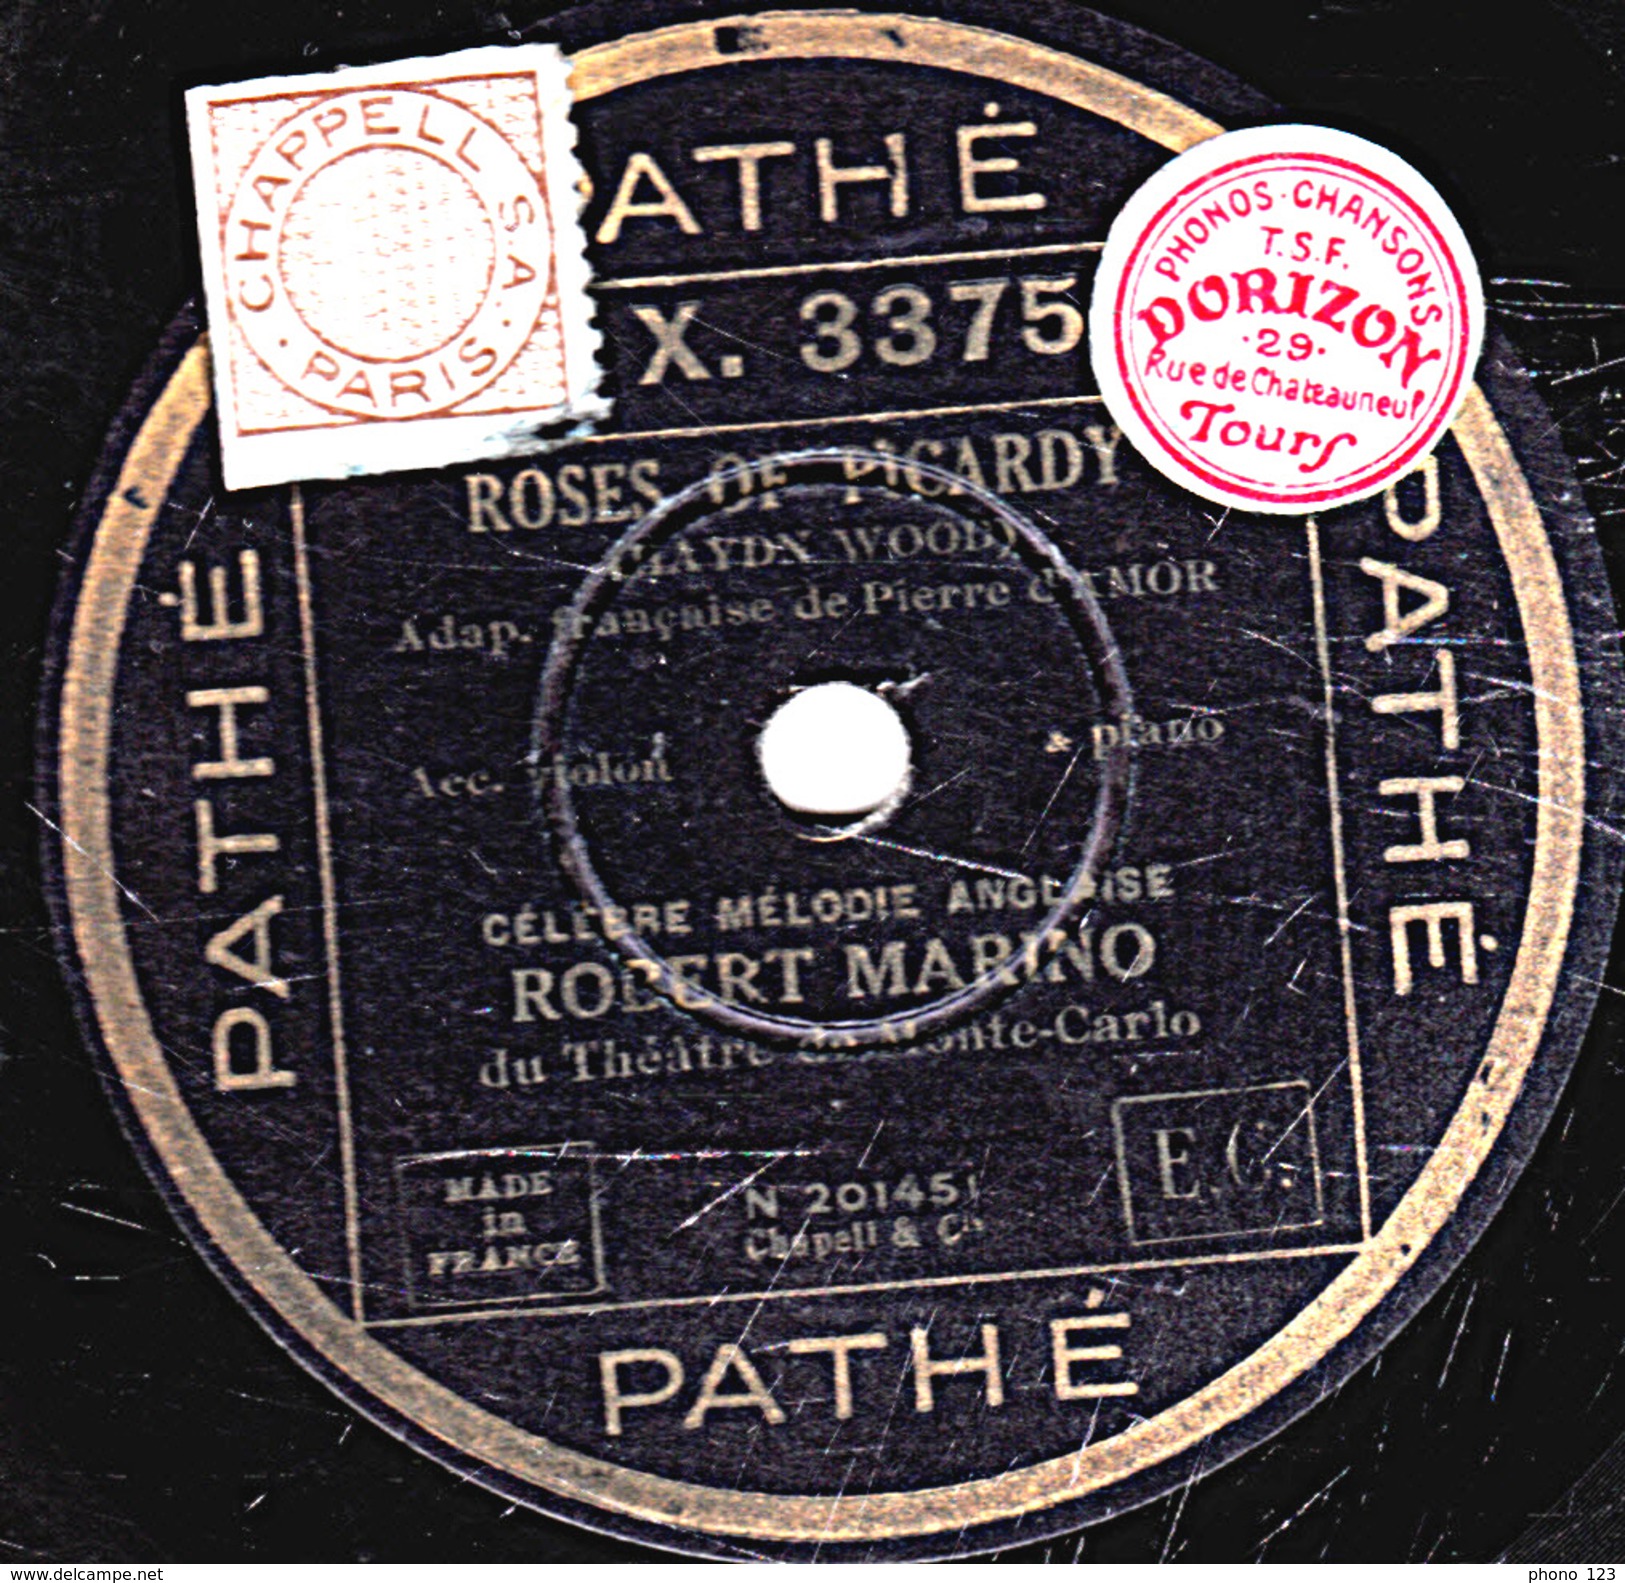 78 T. - 25 Cm - état  B - Robert MARINO - ROSES OF PICARDIE - PETITE MAISON GRISE - 78 T - Discos Para Fonógrafos